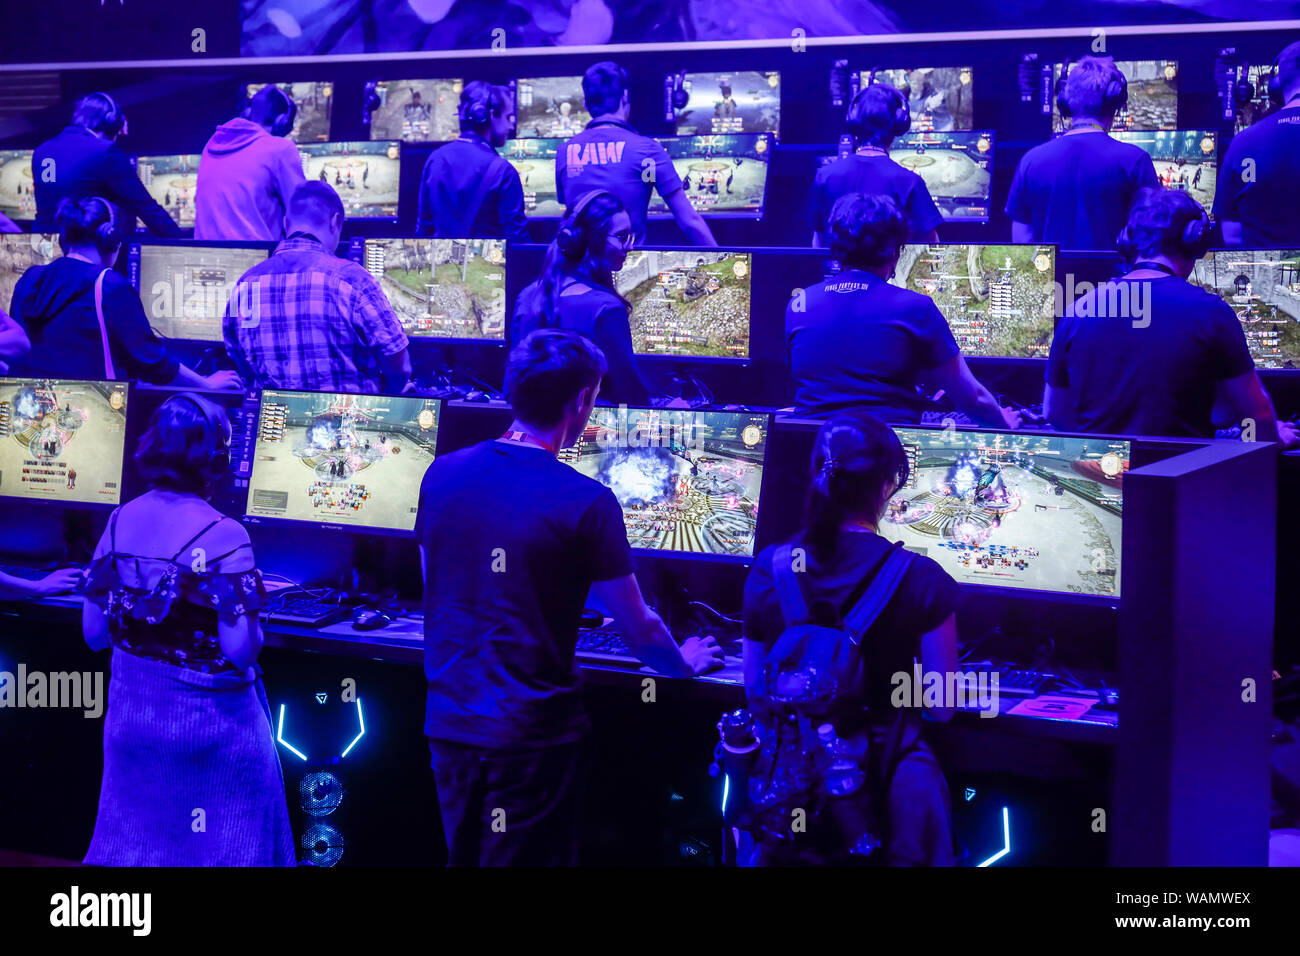 Köln, Nordrhein-Westfalen, Deutschland - Gamescom, junge Messebesucher spielen das Computerspiel "Final Fantasy XIV" auf der Gamescom. K Stockfoto